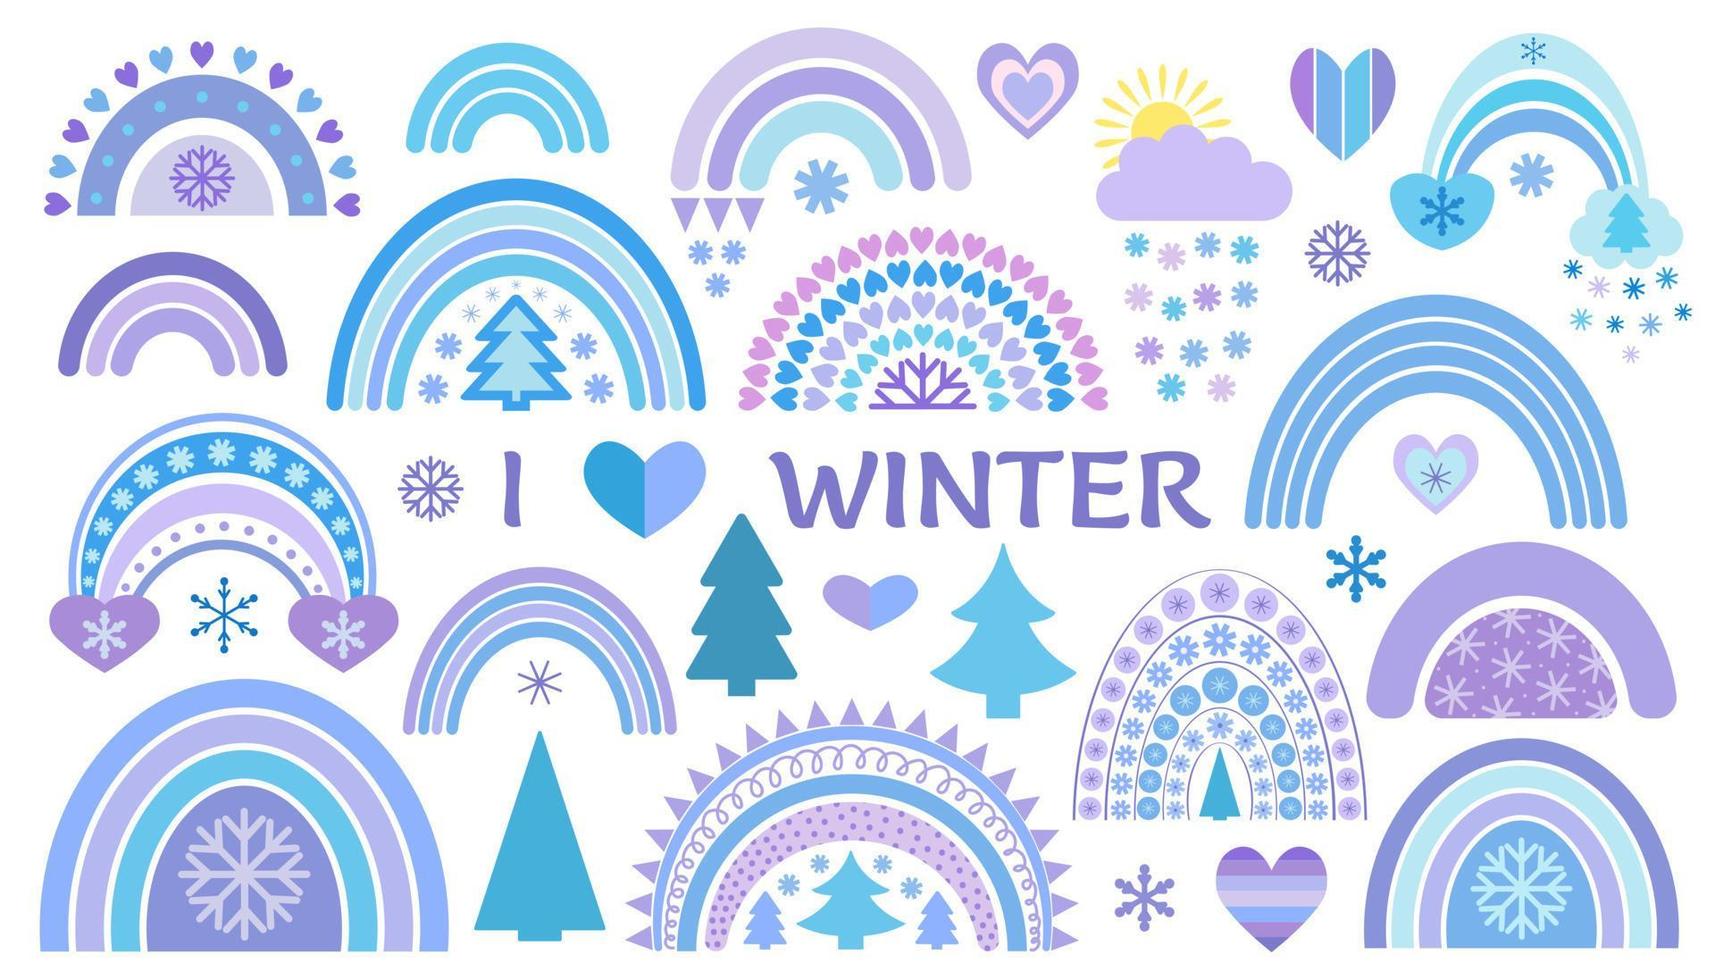 winterregenboogcollectie in vlakke stijl. leuke illustratie in blauw op thema van Kerstmis, Nieuwjaar, gezellige winter vector